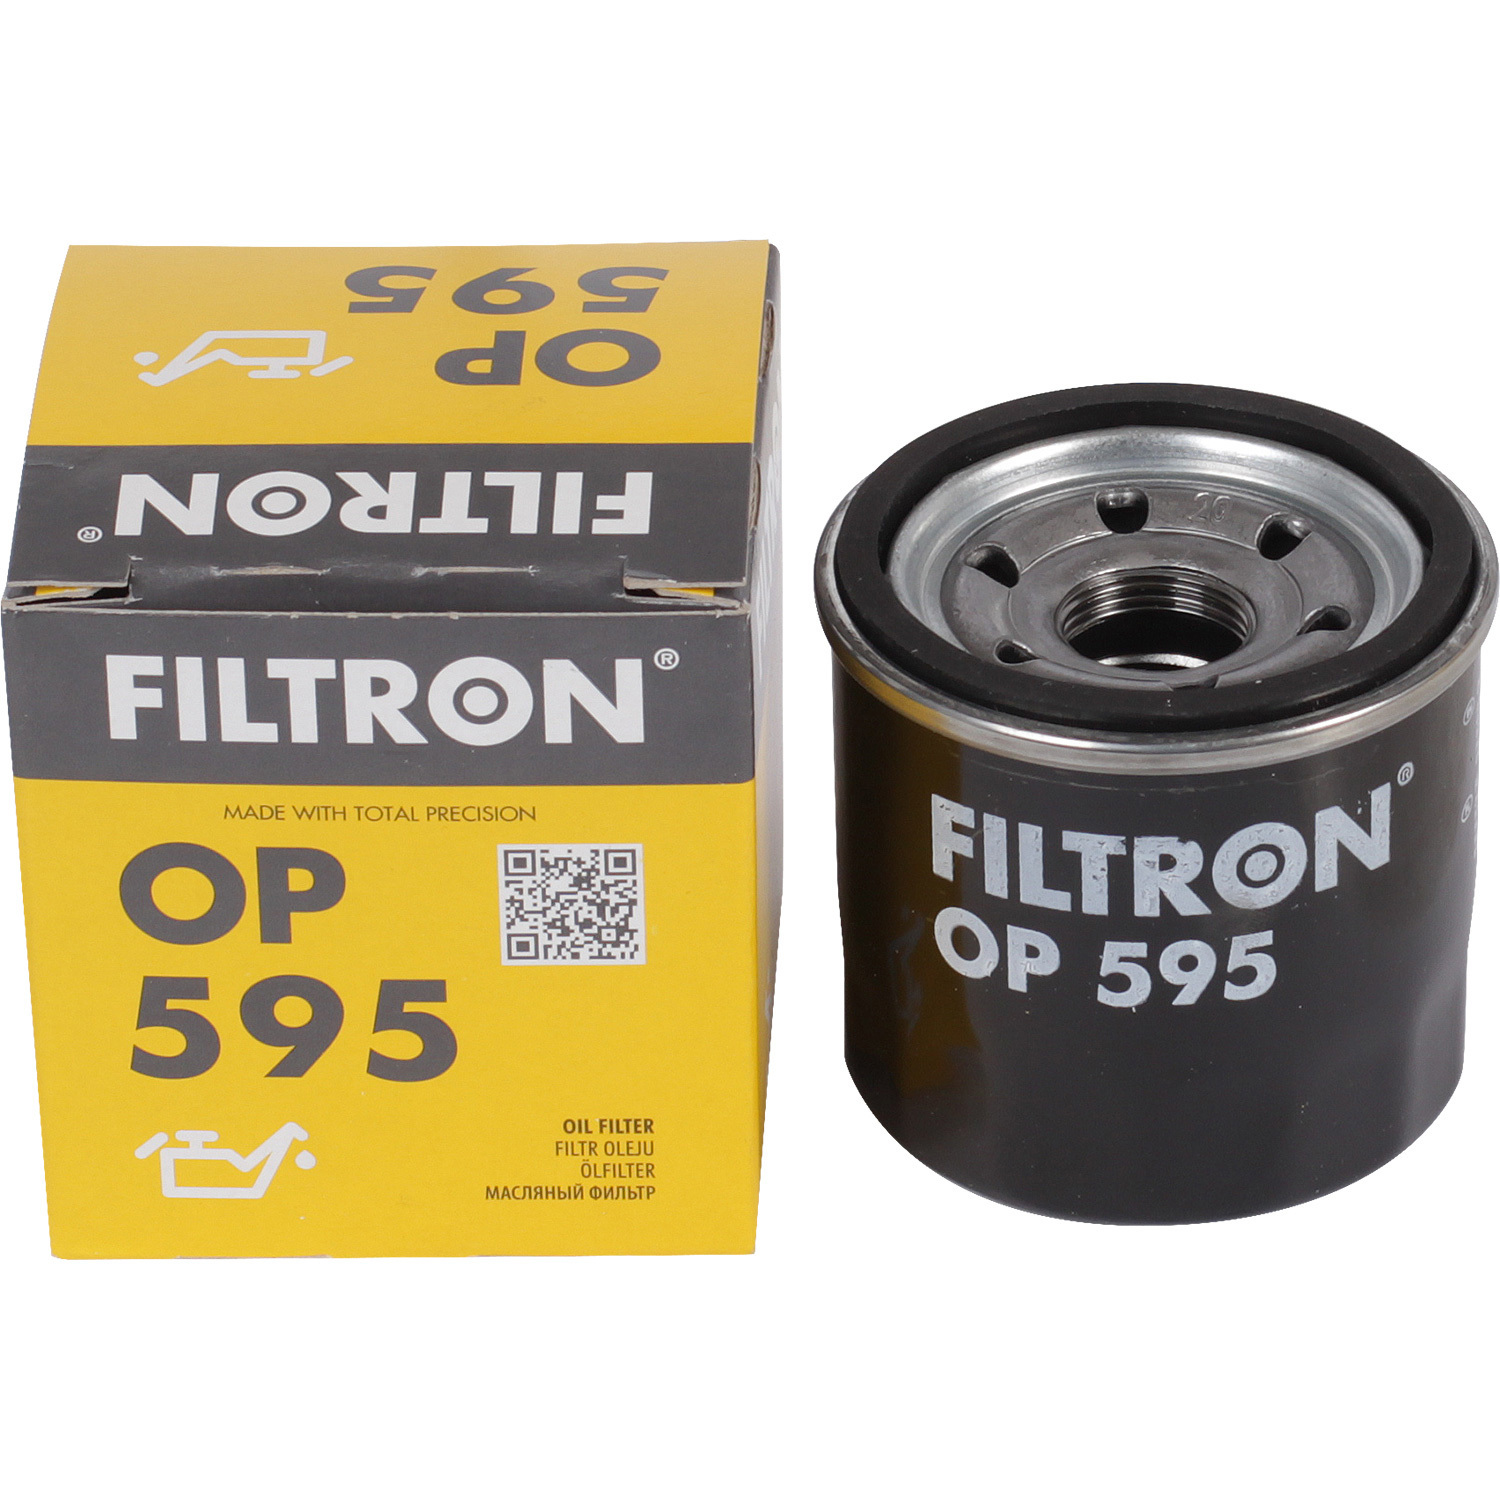 Фильтры Filtron Фильтр масляный Filtron OP595 фильтры filtron фильтр масляный filtron op5971